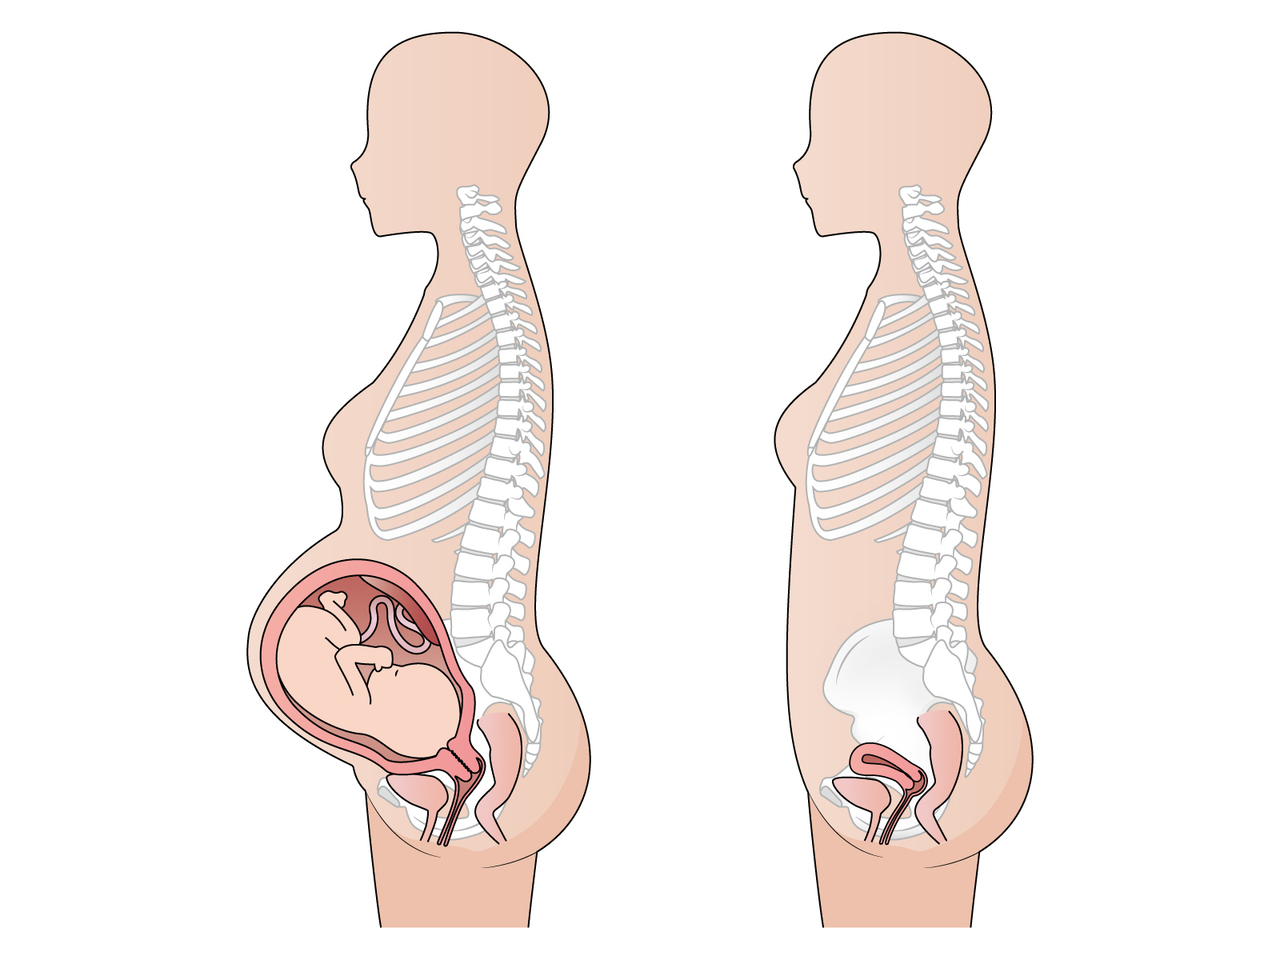 妊娠時の骨盤にかかるストレスを表した図